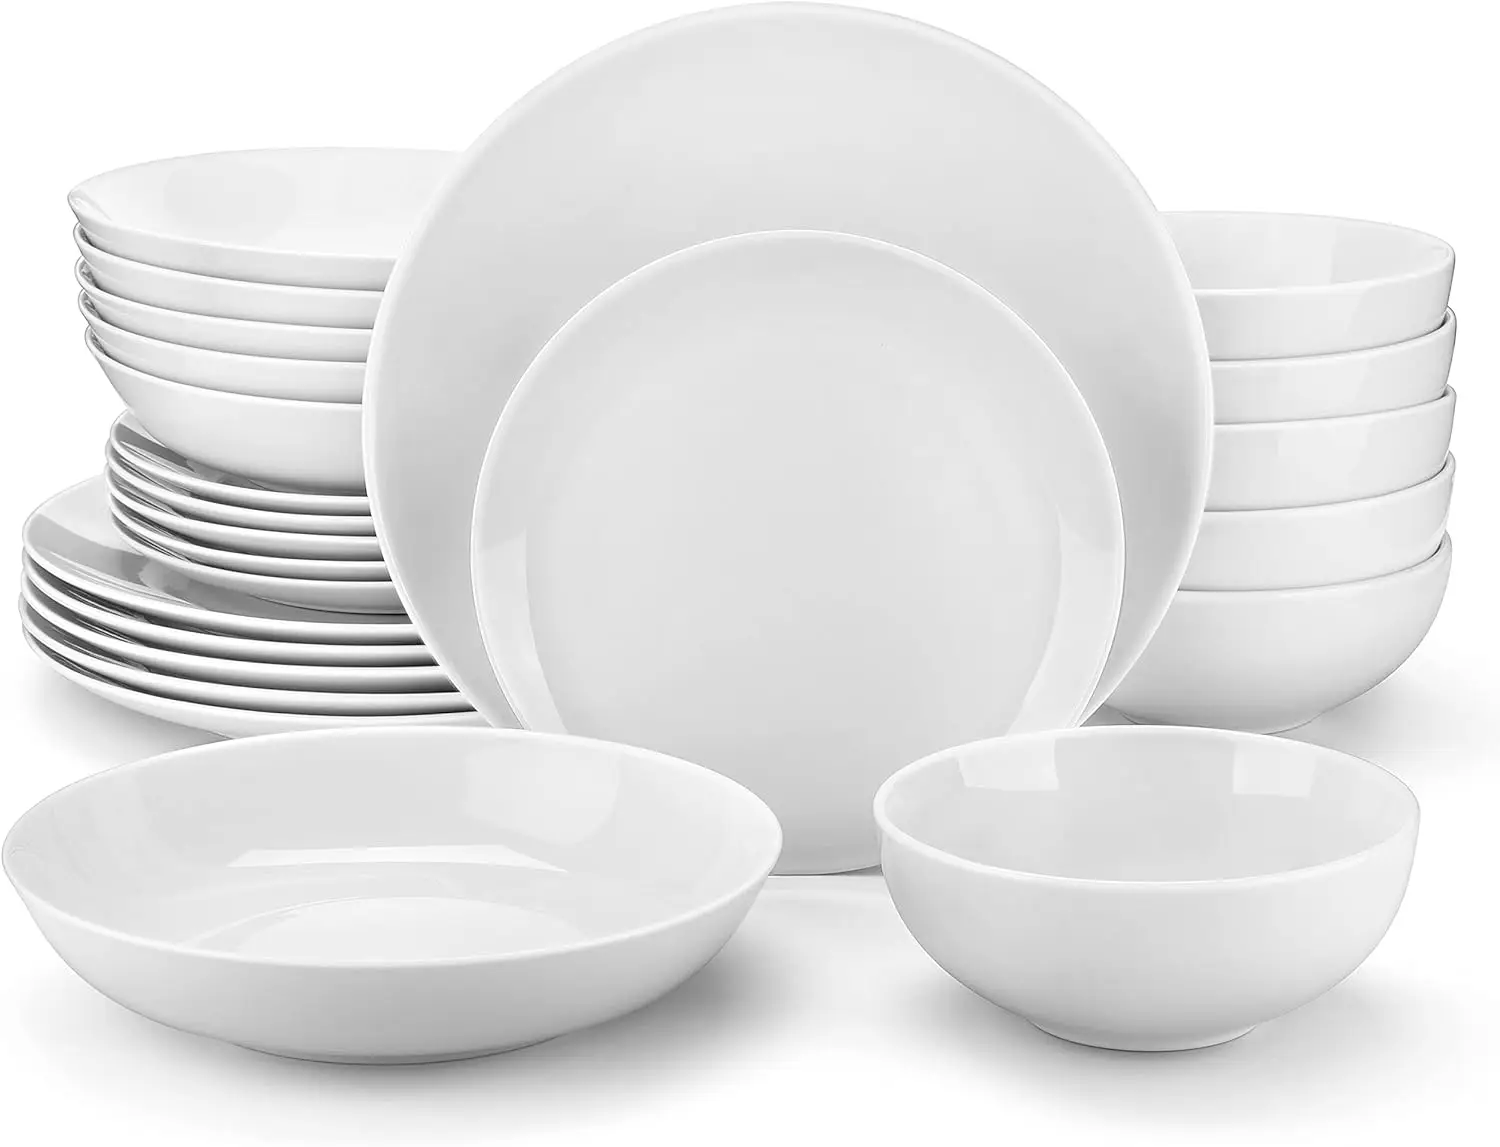 Gourmet-Porzellan-Geschirrs ets, modernes weißes rundes Geschirrset zum Servieren von Tellern und Schüsseln zum Nachtisch, Salat, Suppe